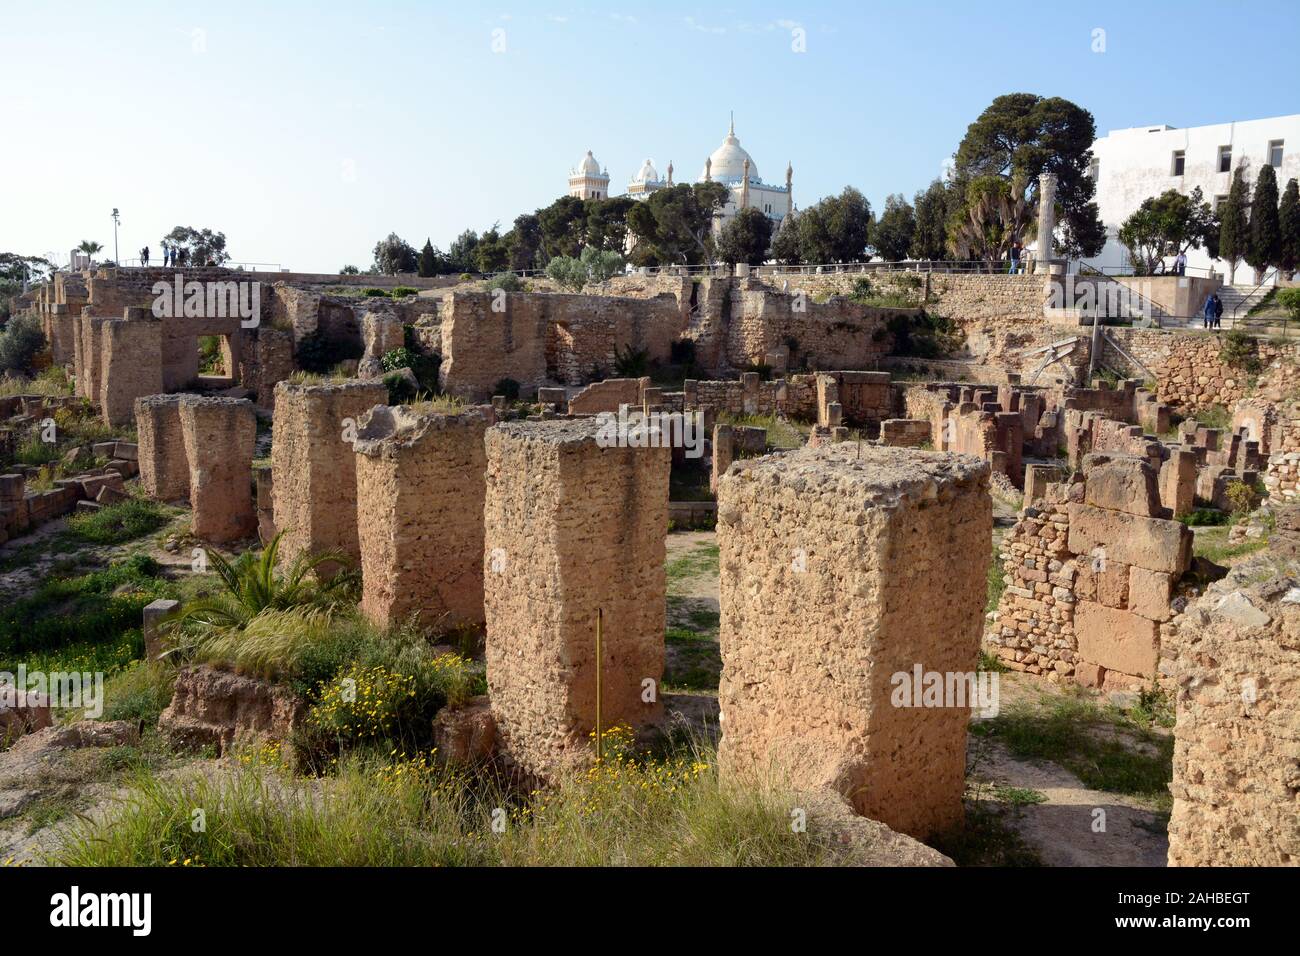 L'ancien comptoir punique Carthaginois () Ruines archéologiques de colline de Byrsa dans la banlieue chic de Tunis Carthage, sur la côte méditerranéenne de Tunisie. Banque D'Images